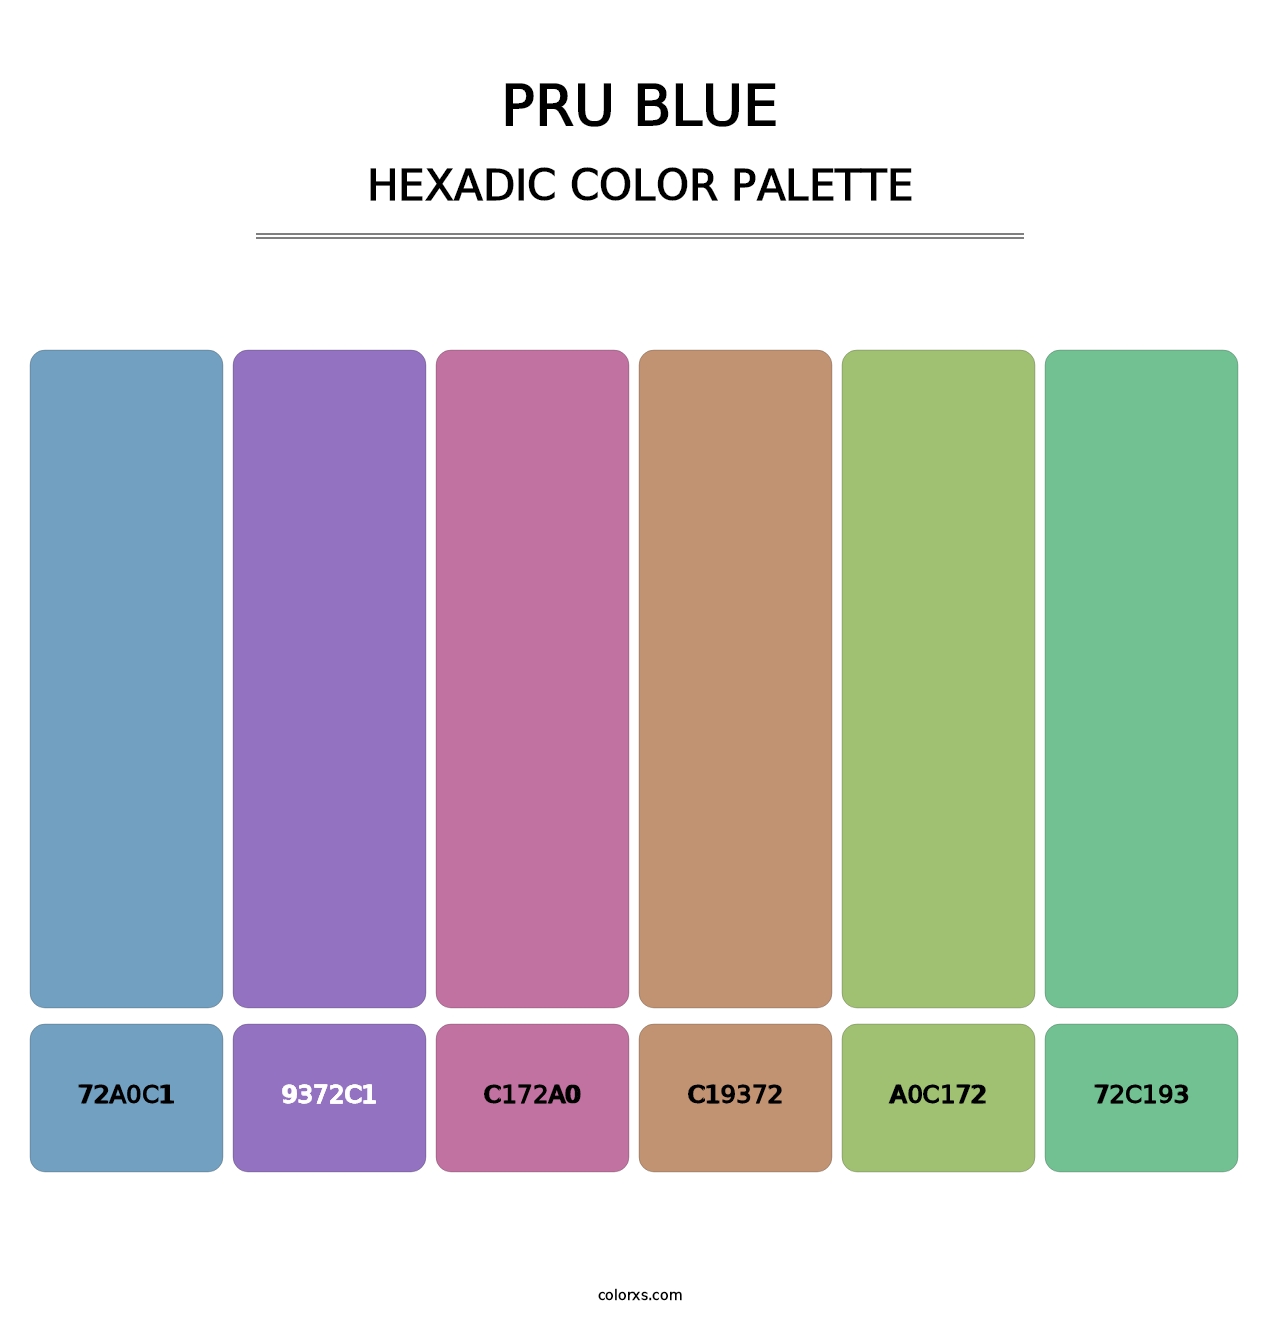 PRU Blue - Hexadic Color Palette